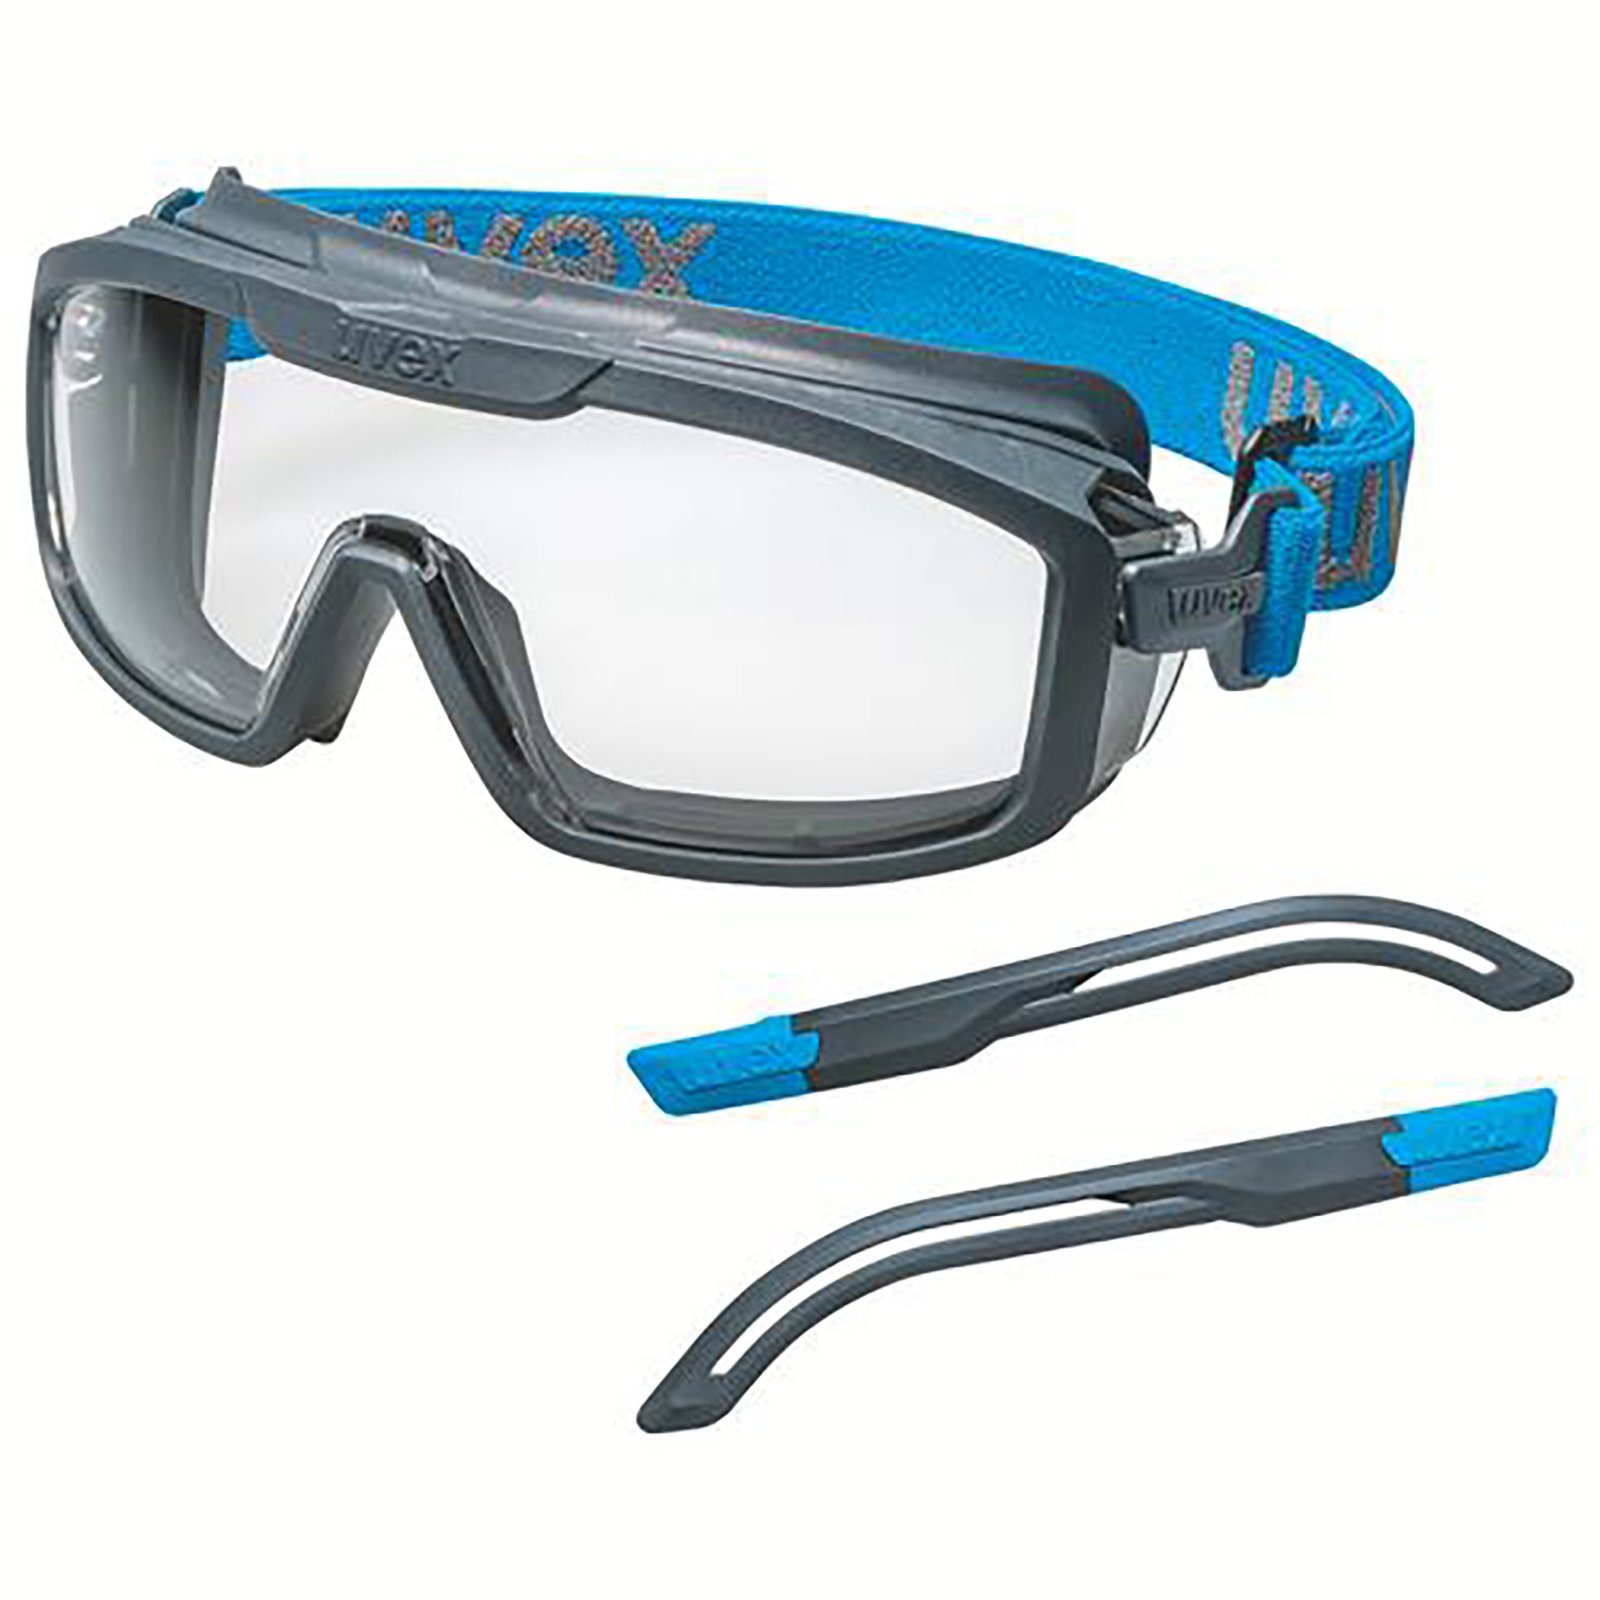 Uvex Arbeitsschutzbrille Vollsichtbrille i-guard+ sv exc. 9143300